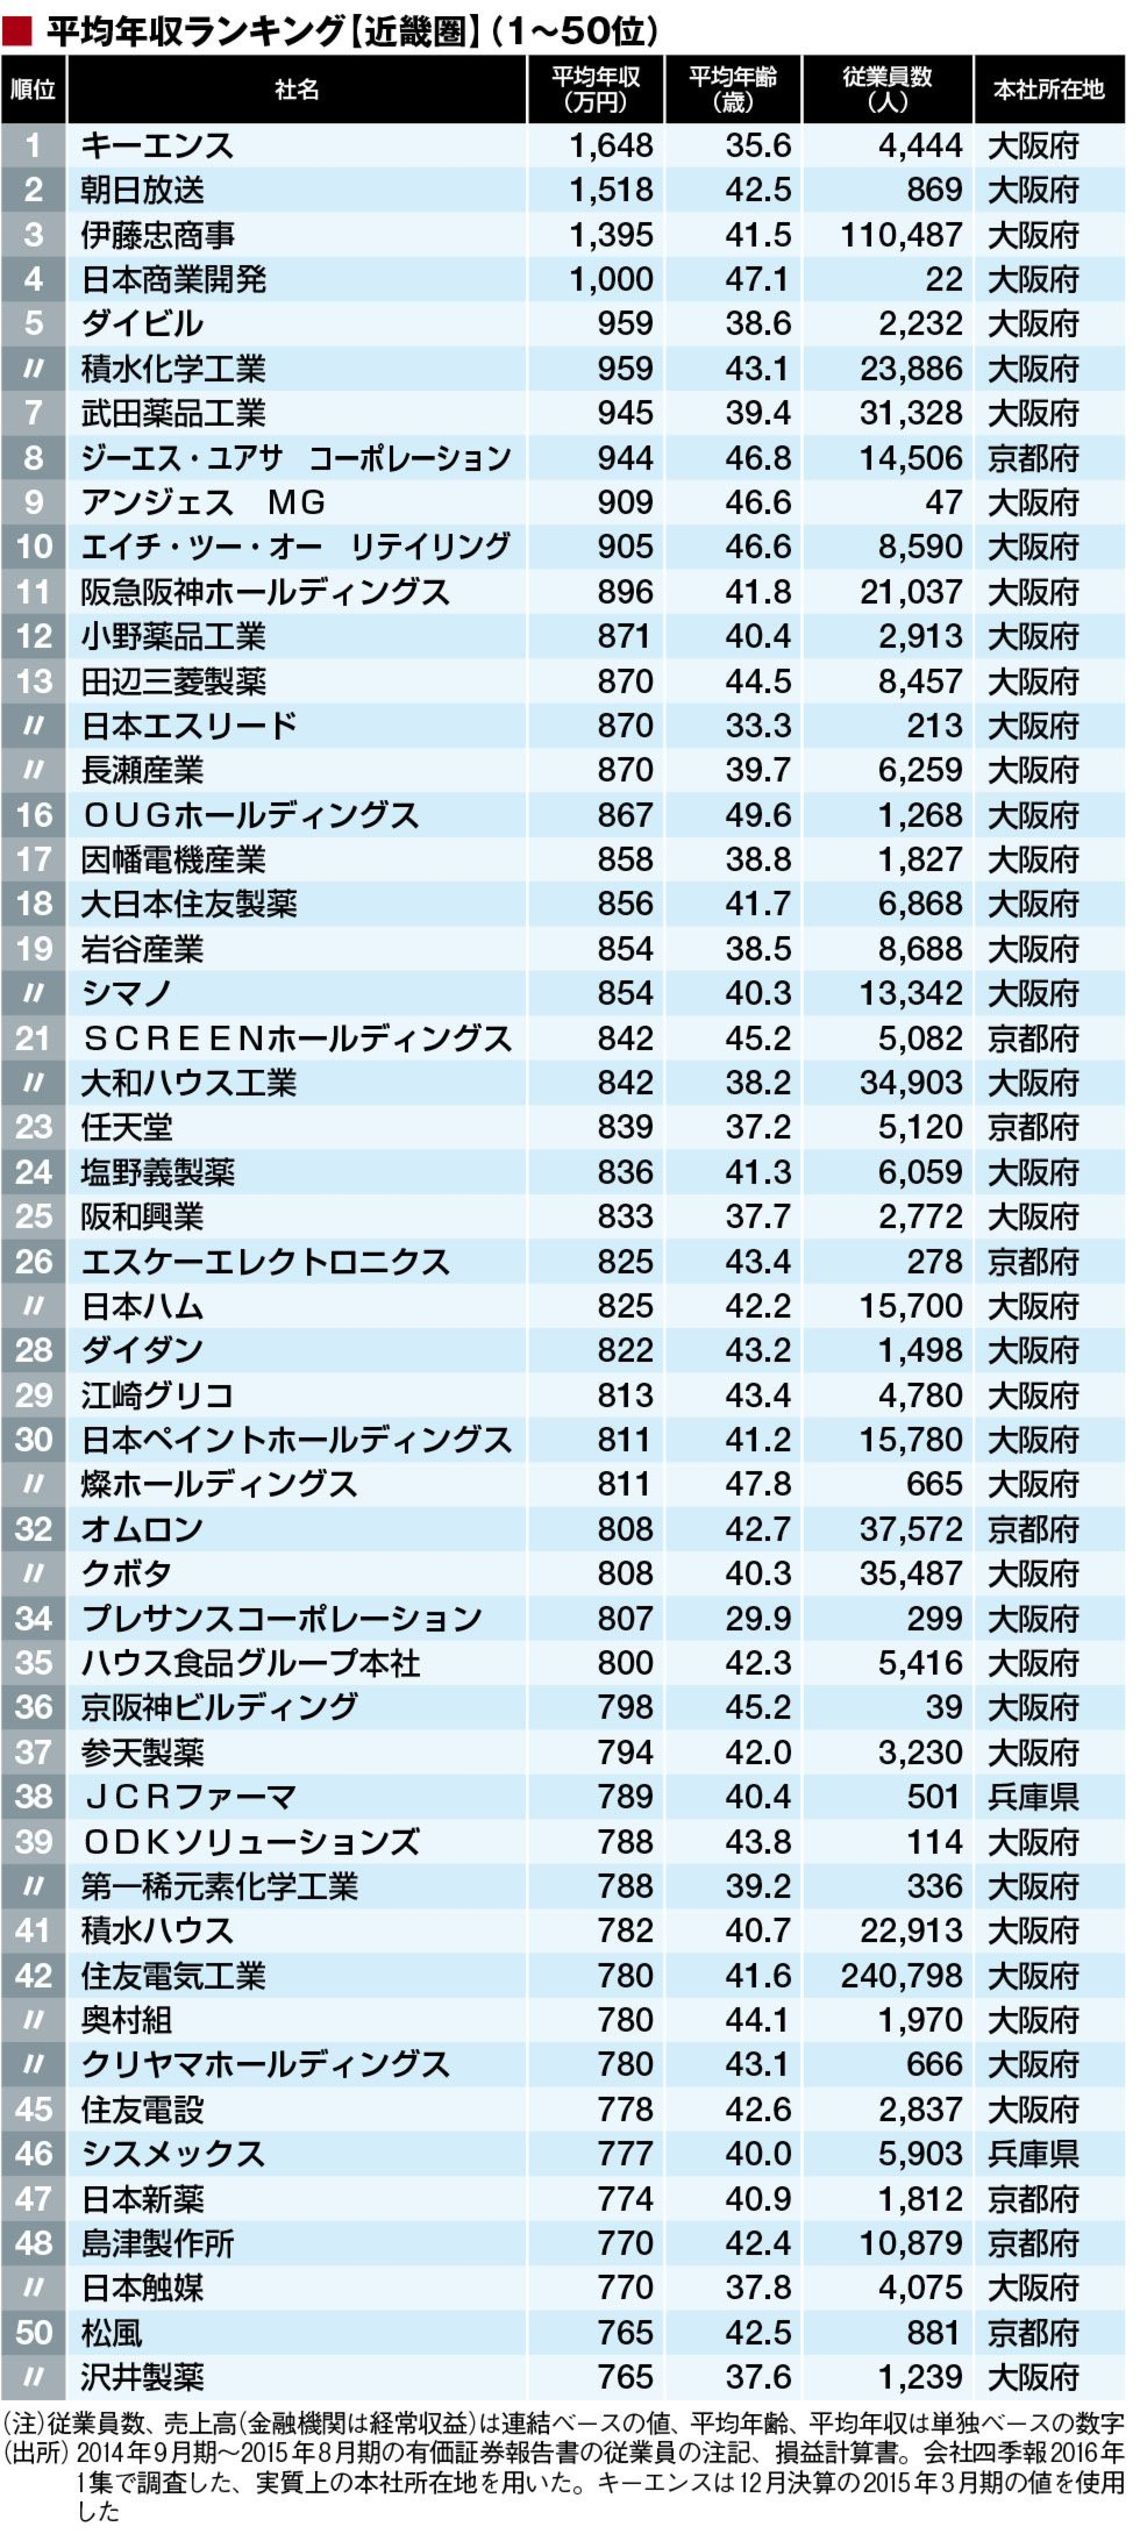 初公開 平均年収ランキング 近畿528社 賃金 生涯給料ランキング 東洋経済オンライン 経済ニュースの新基準